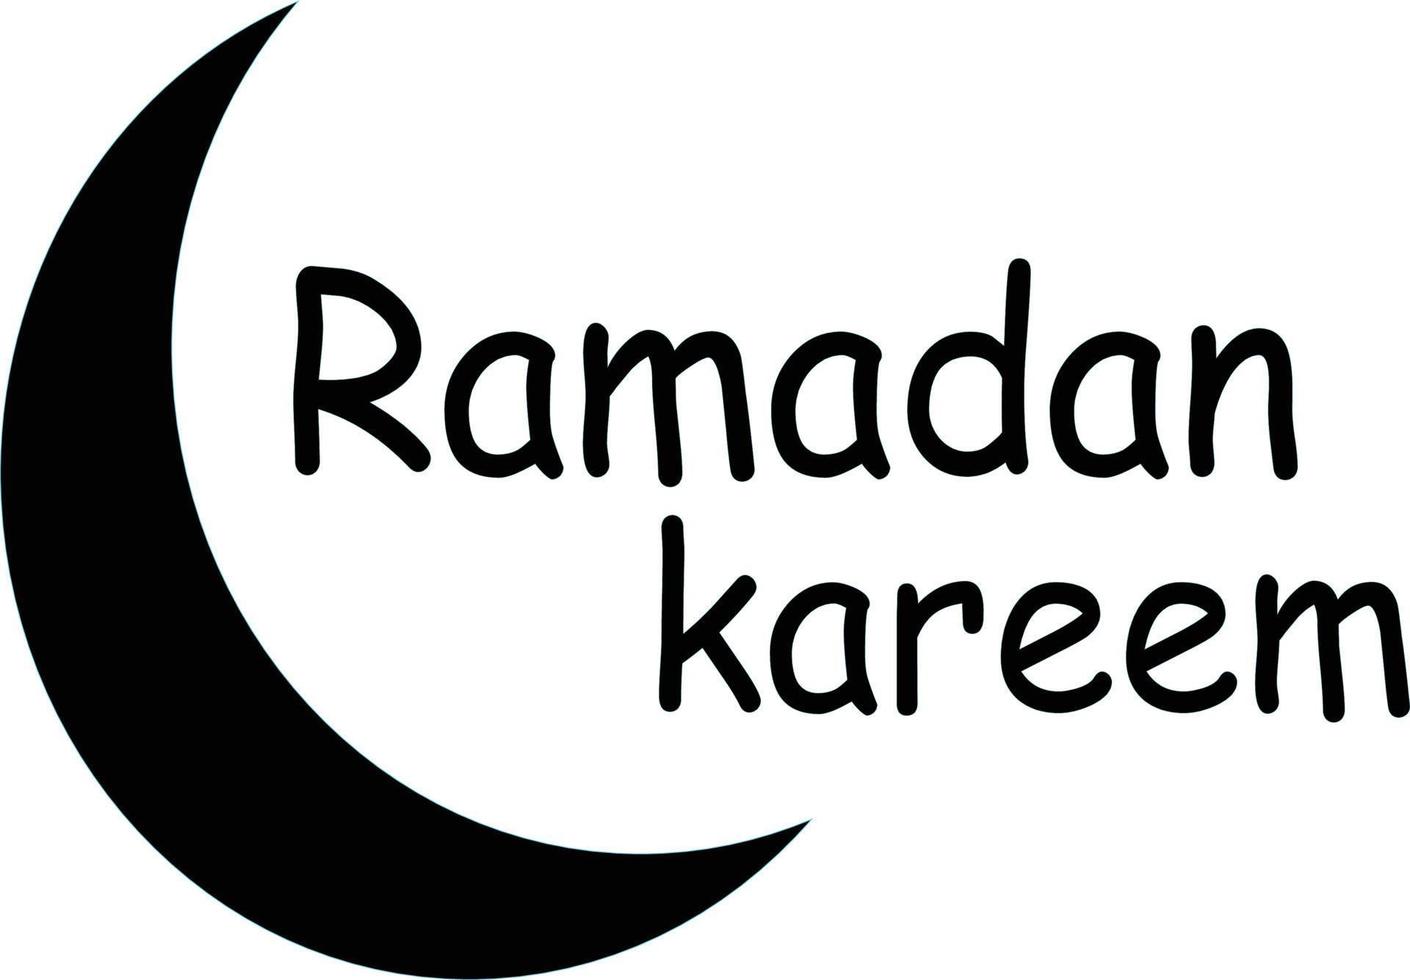 projeto de saudação ramadan kareem com ícone da lua. fundo branco. textura preta. modelo de vetor